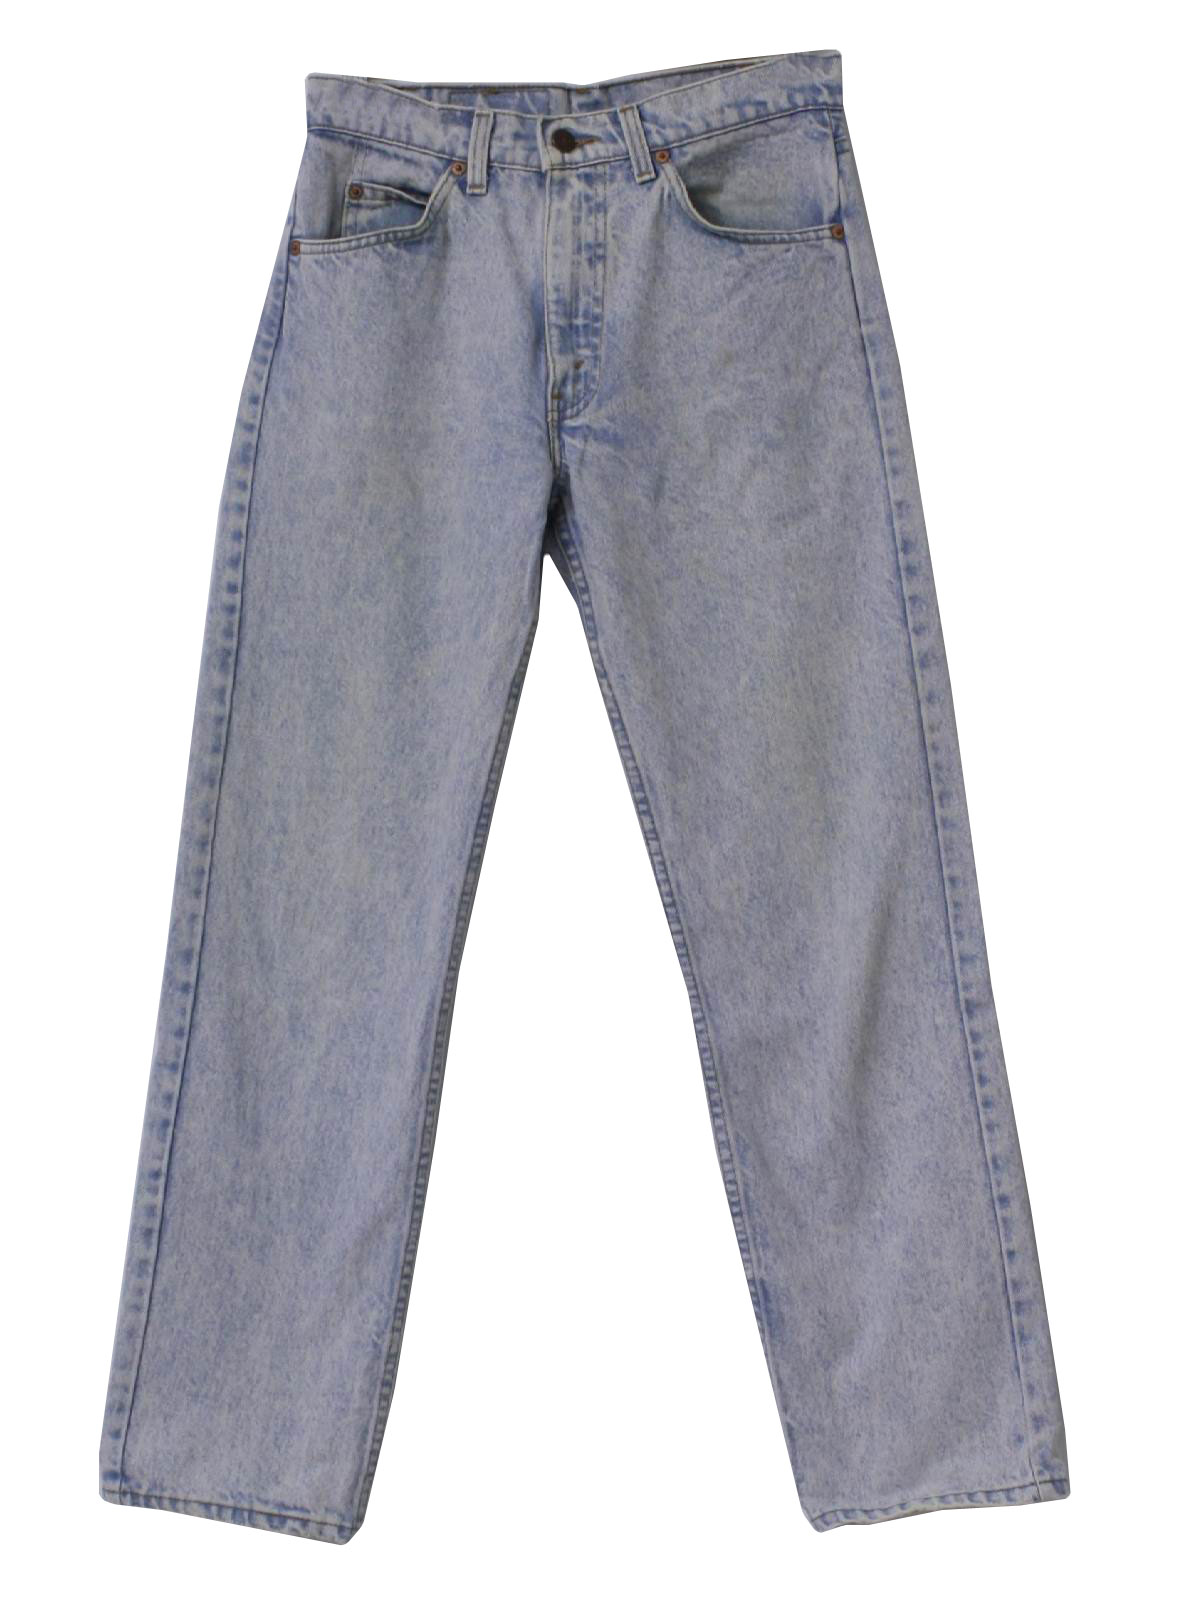 Retro 80's Pants: 80s -Levis 506- Mens light blue stone washed cotton ...